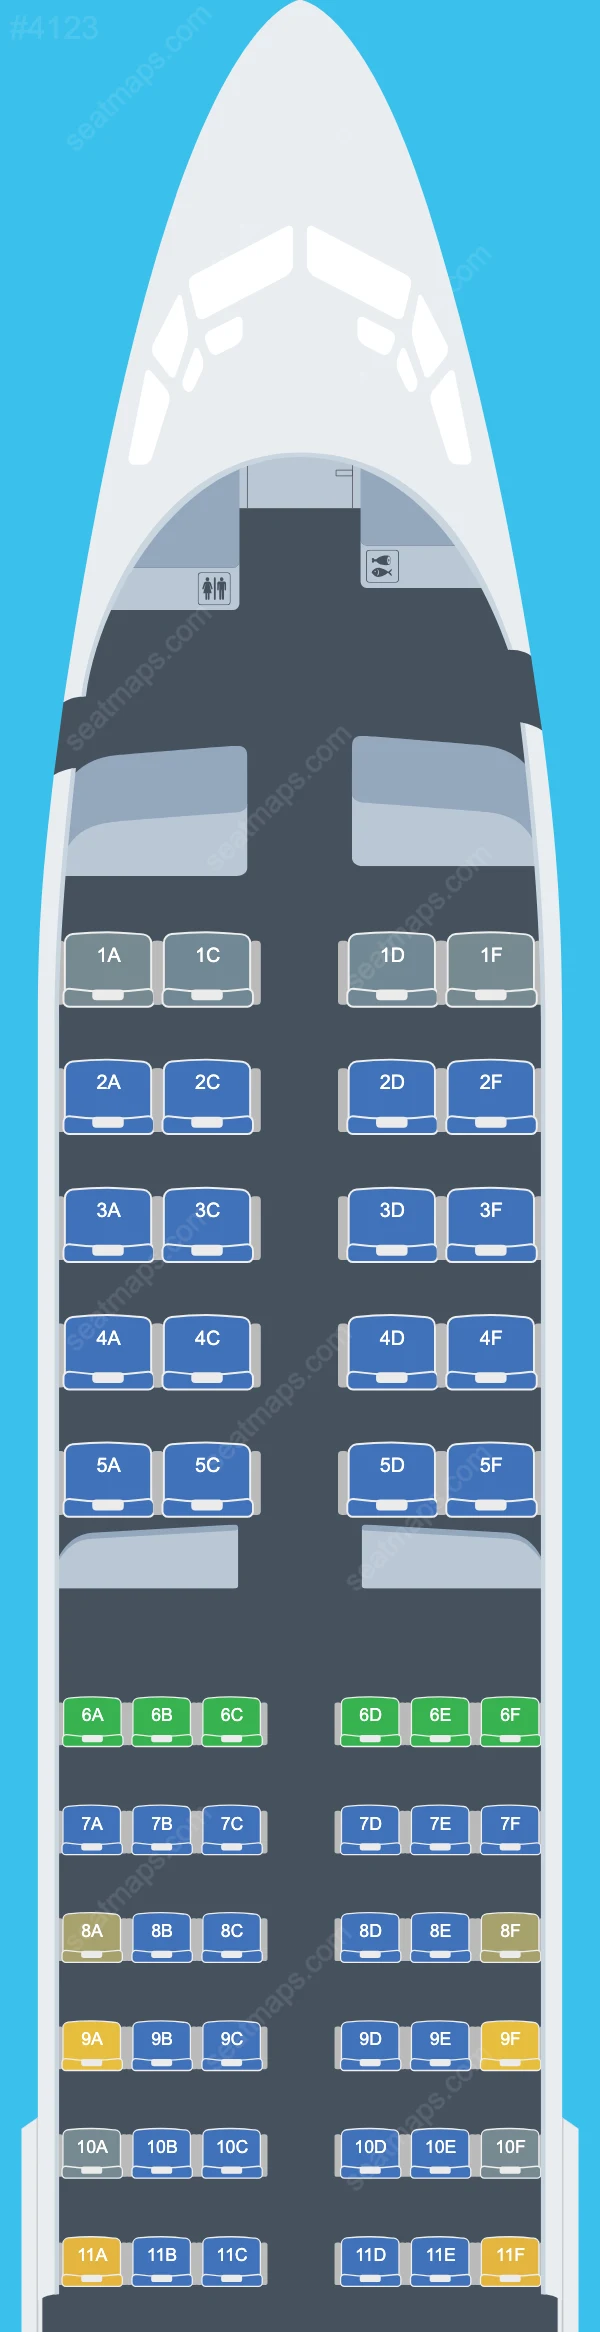 Aeroflot Boeing 737 Seat Maps 737-800